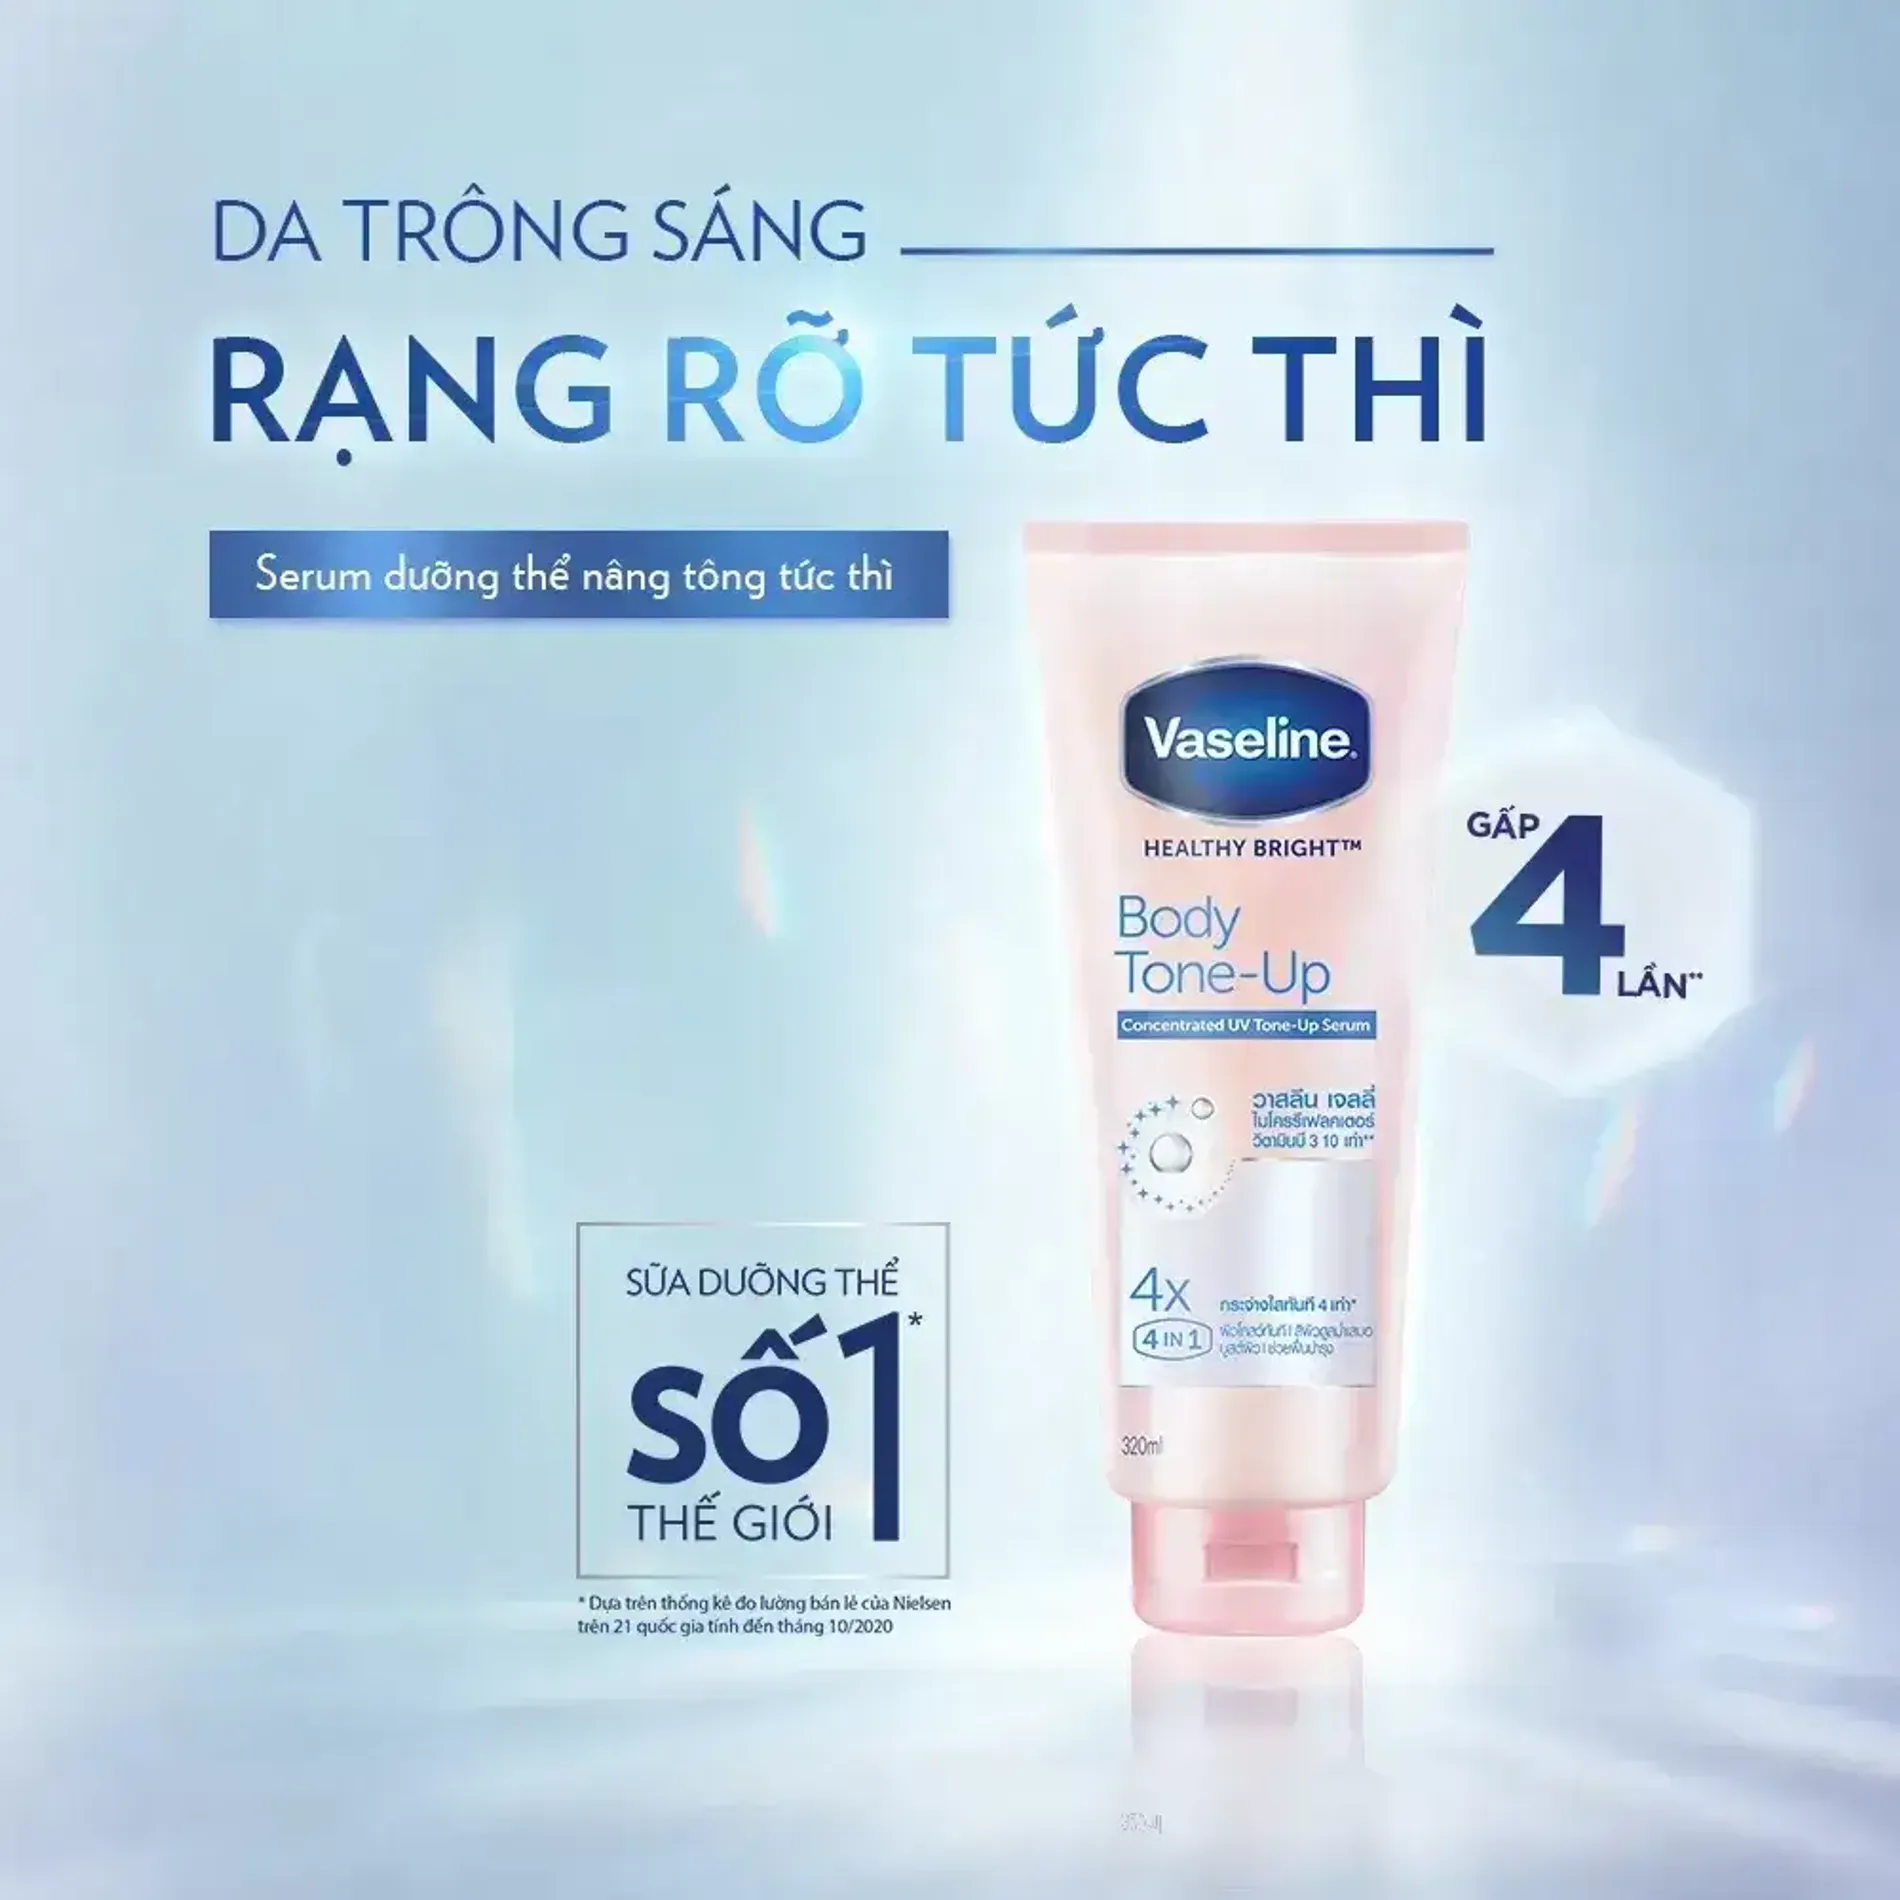 tinh-chat-duong-the-nang-tong-sang-da-vaseline-healthy-bright-body-tone-up-concentrated-uv-serum-320ml-3